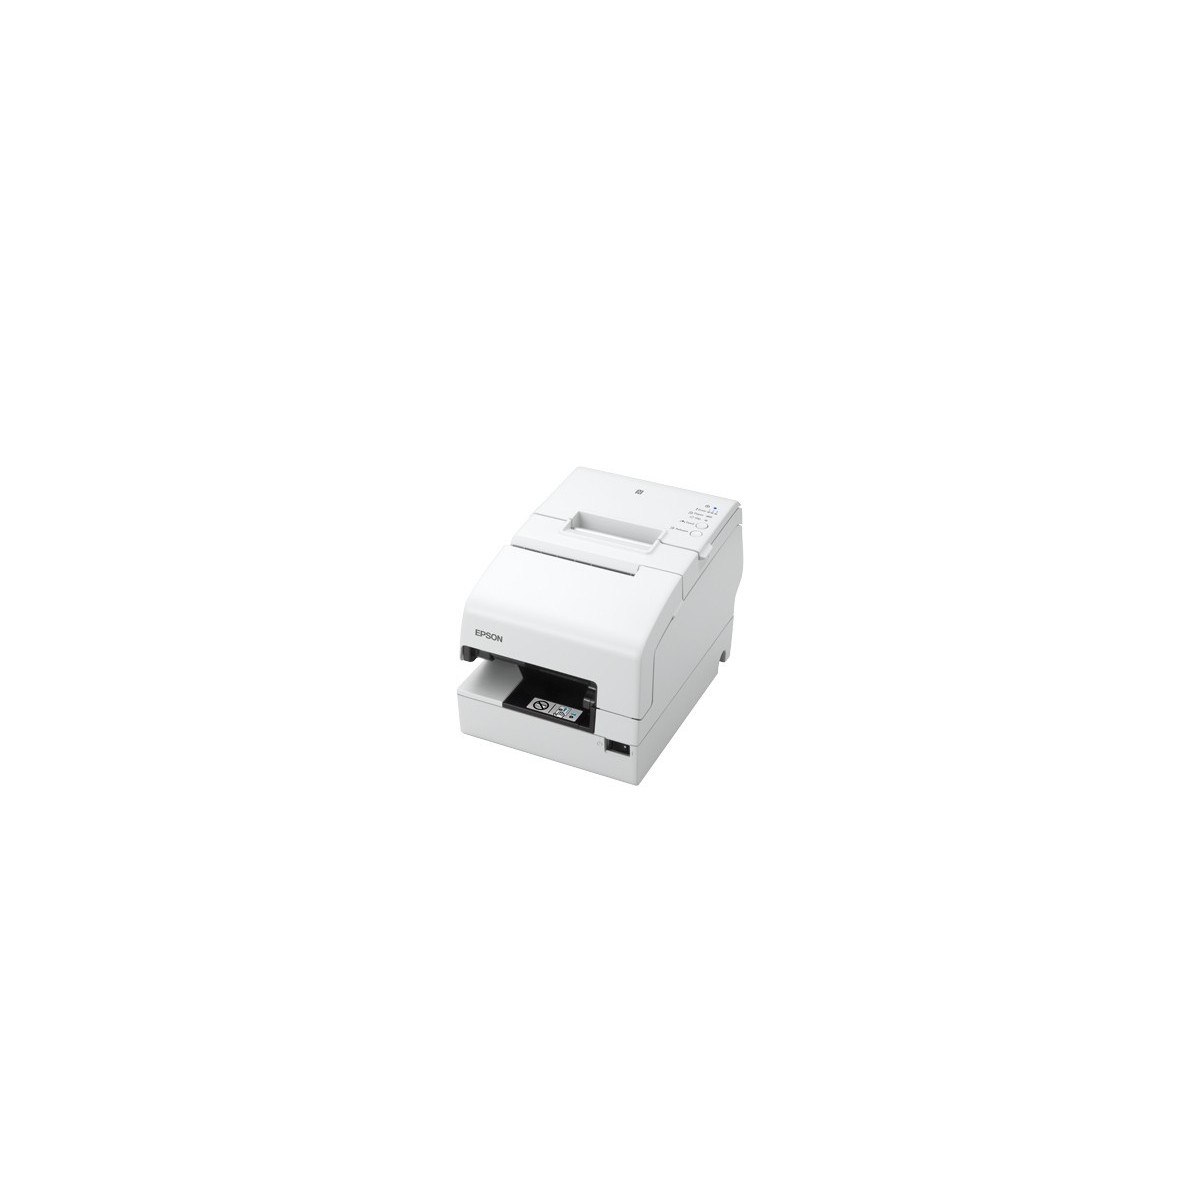 Epson TM-H6000V-213 - Thermal - POS printer - 180 x 180 DPI - 5.7 lps - 350 mm/sec - 17.8 cpi